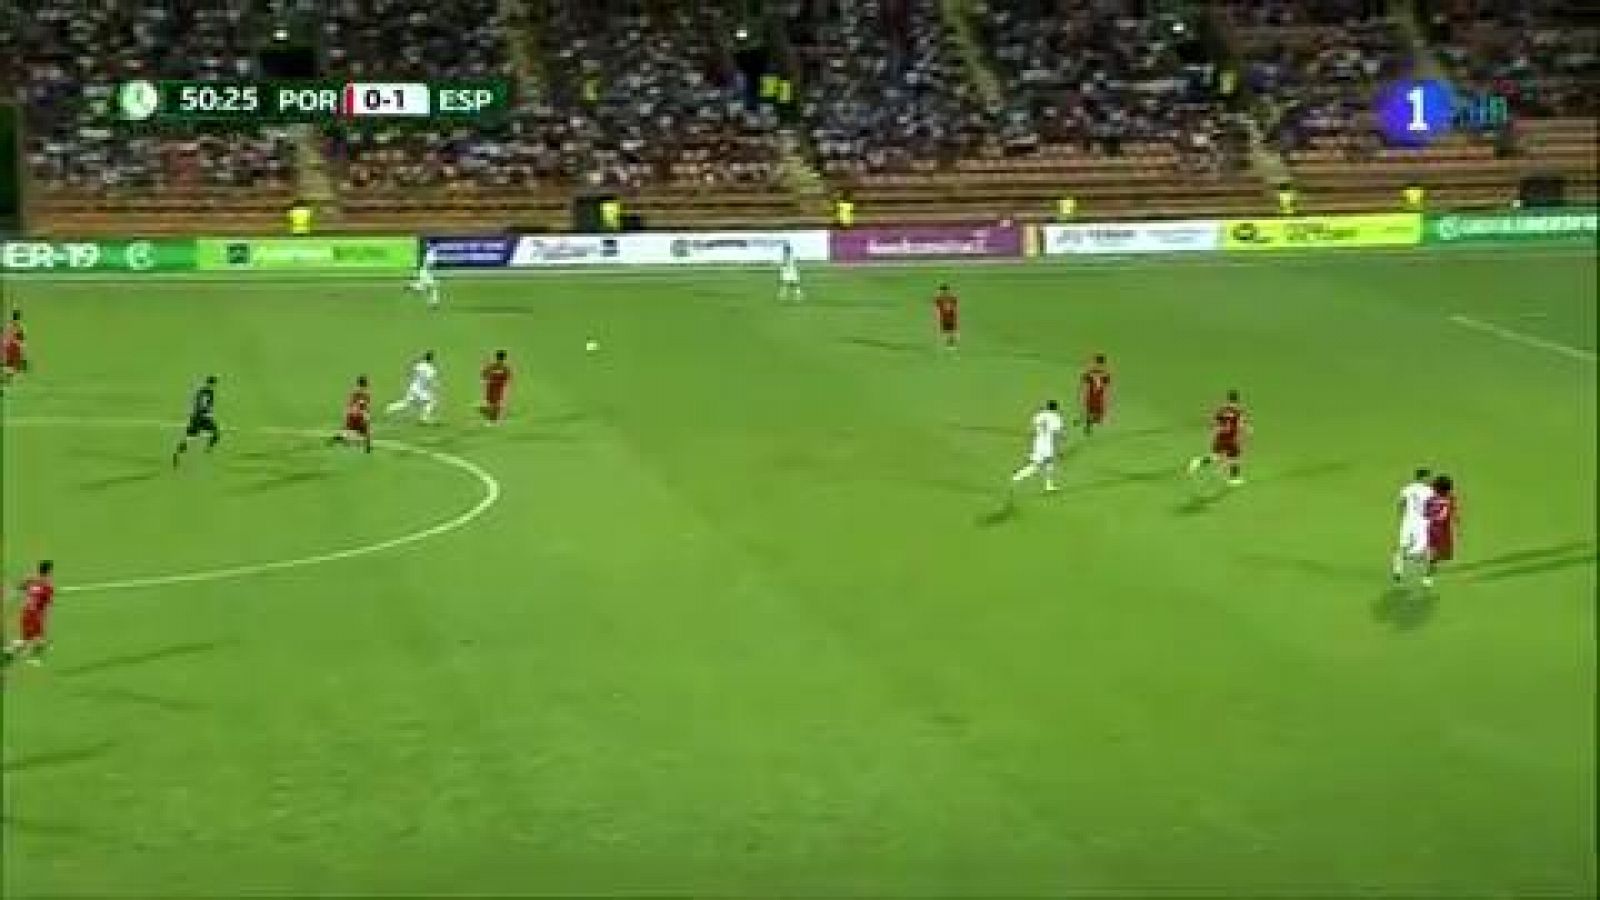 Final Europeo sub'19 | Portugal 0-2 España: Ferrán Torres anota el segundo